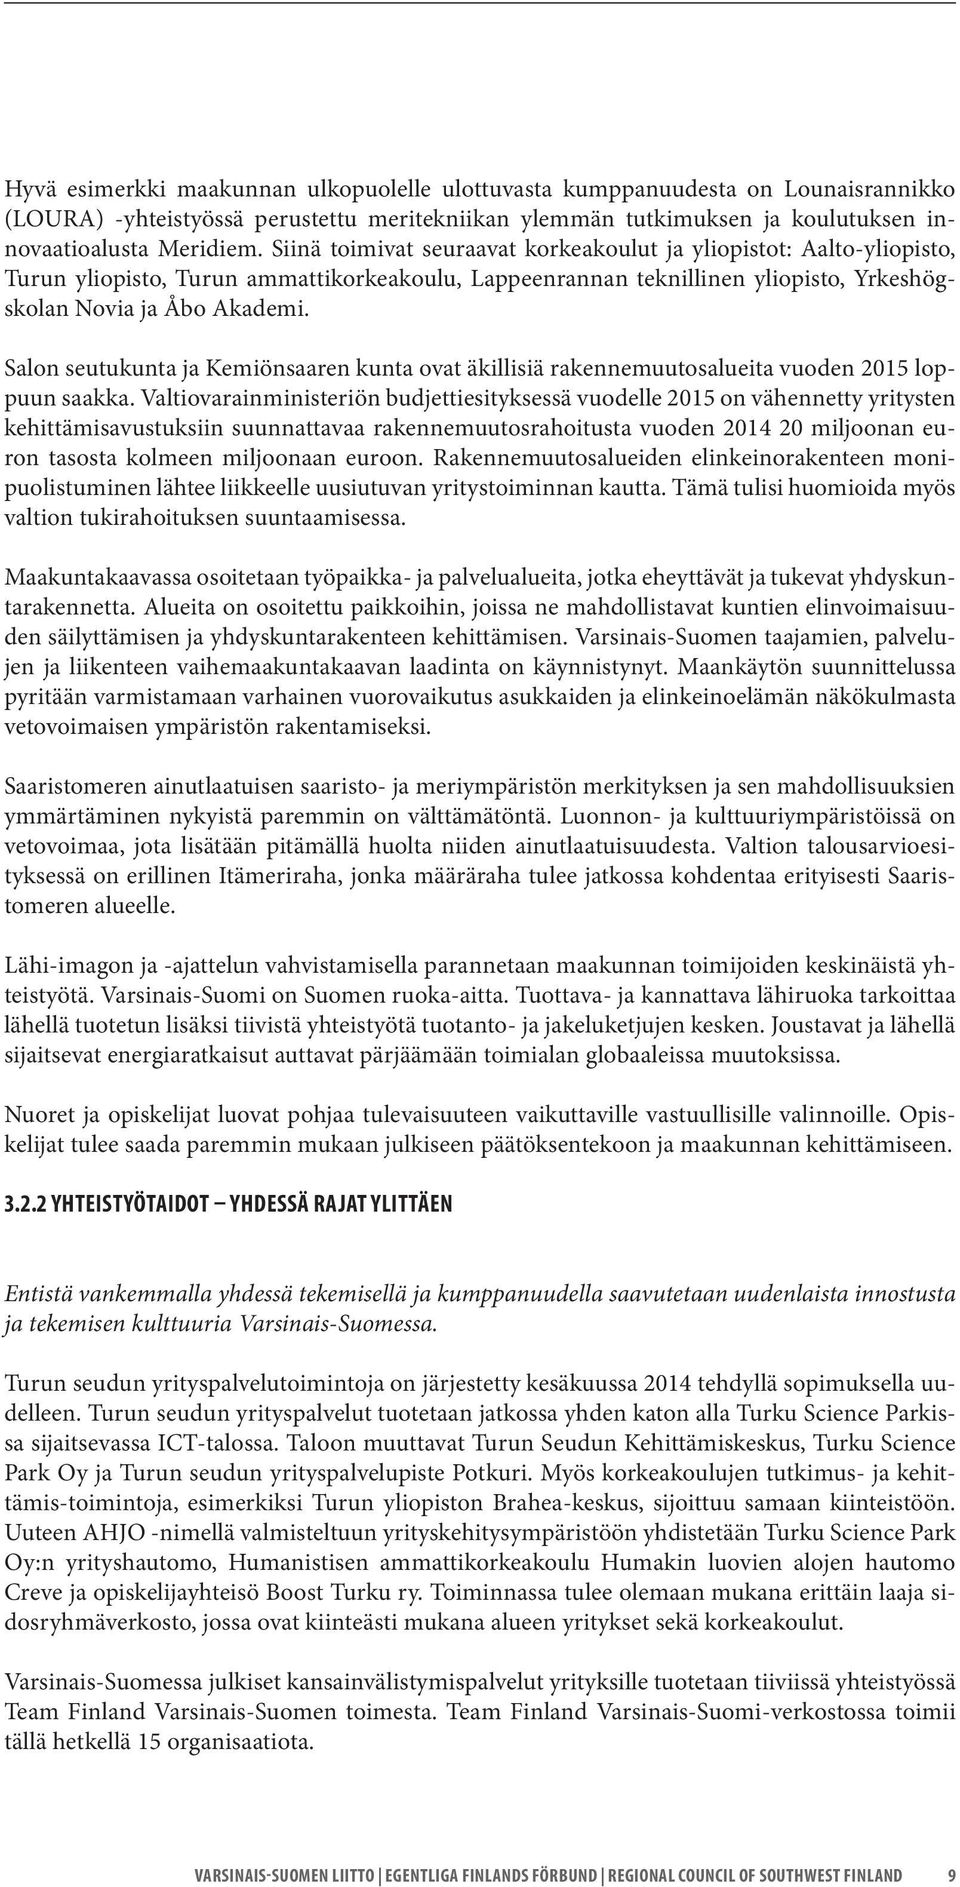 Salon seutukunta ja Kemiönsaaren kunta ovat äkillisiä rakennemuutosalueita vuoden 2015 loppuun saakka.